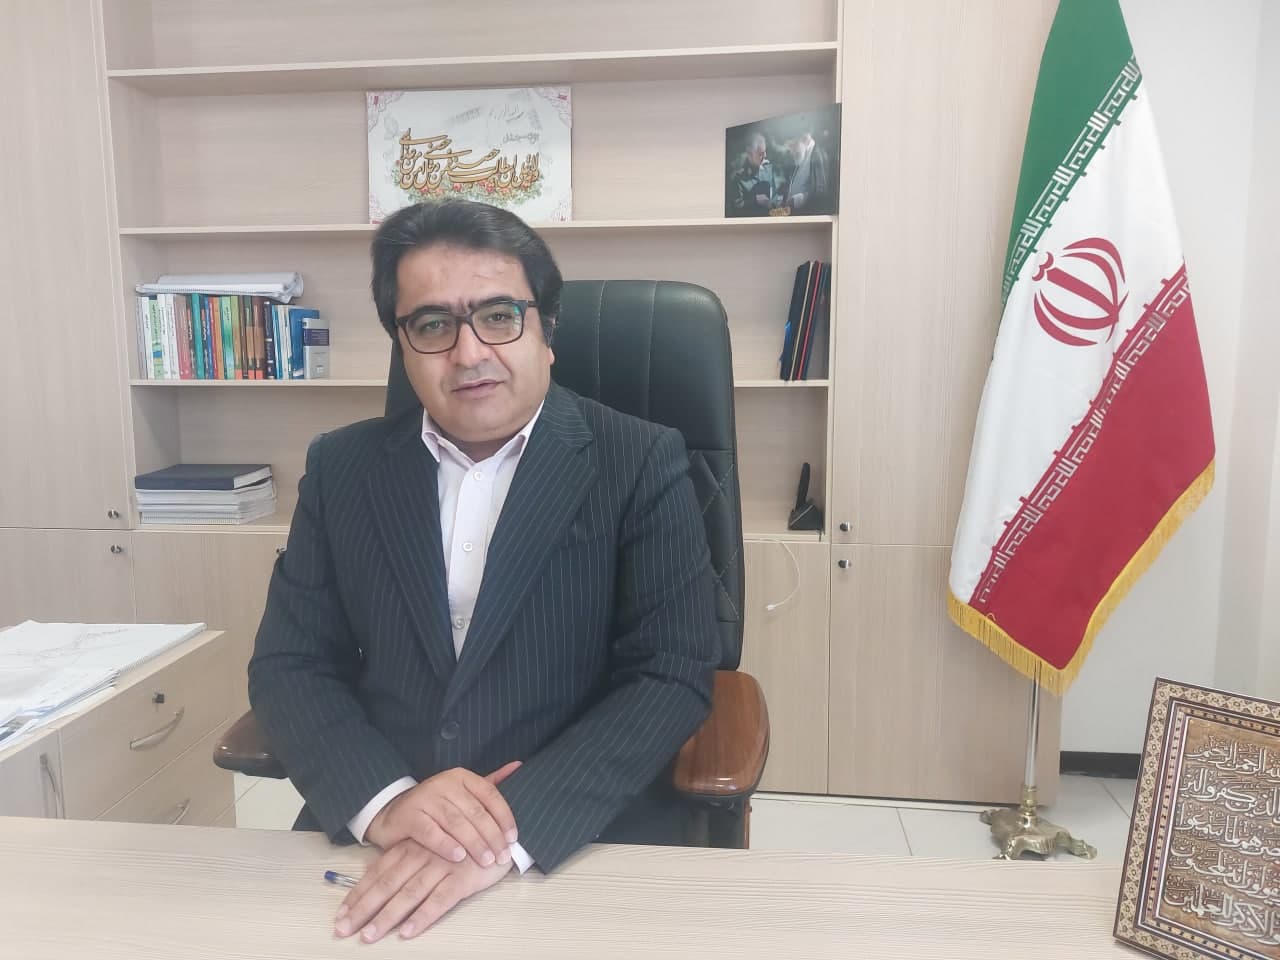 شهردار اردکان در پیامی روز ملی شوراها را تبریک گفت